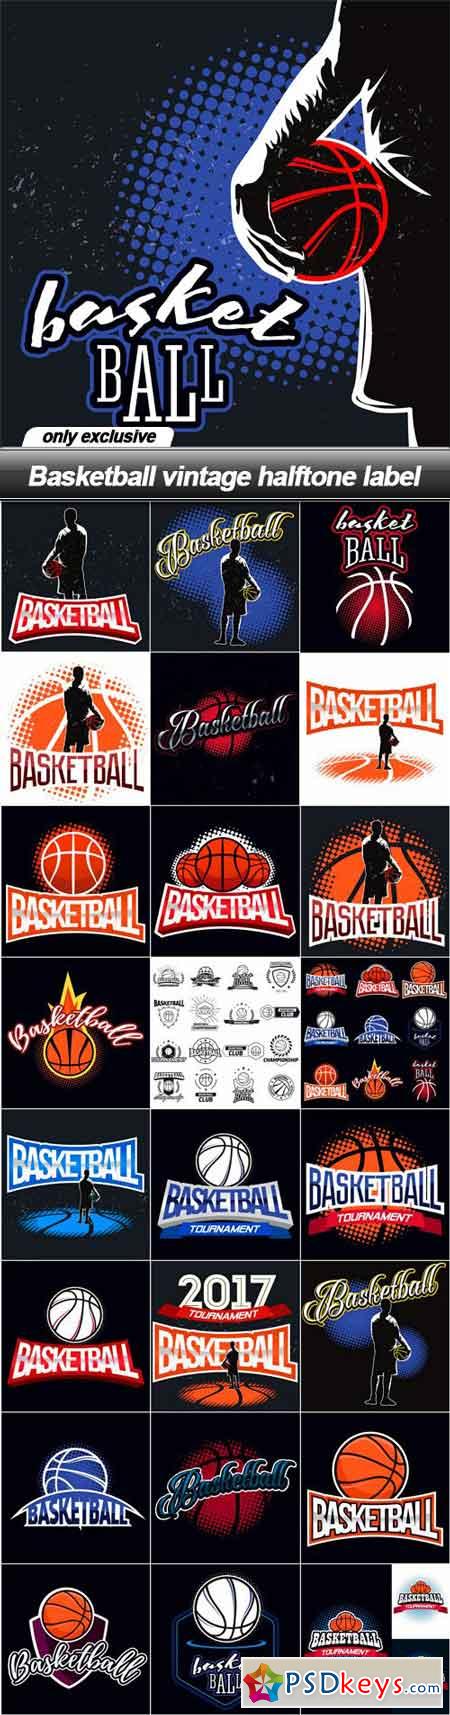 Basketball vintage halftone label - 25 EPS